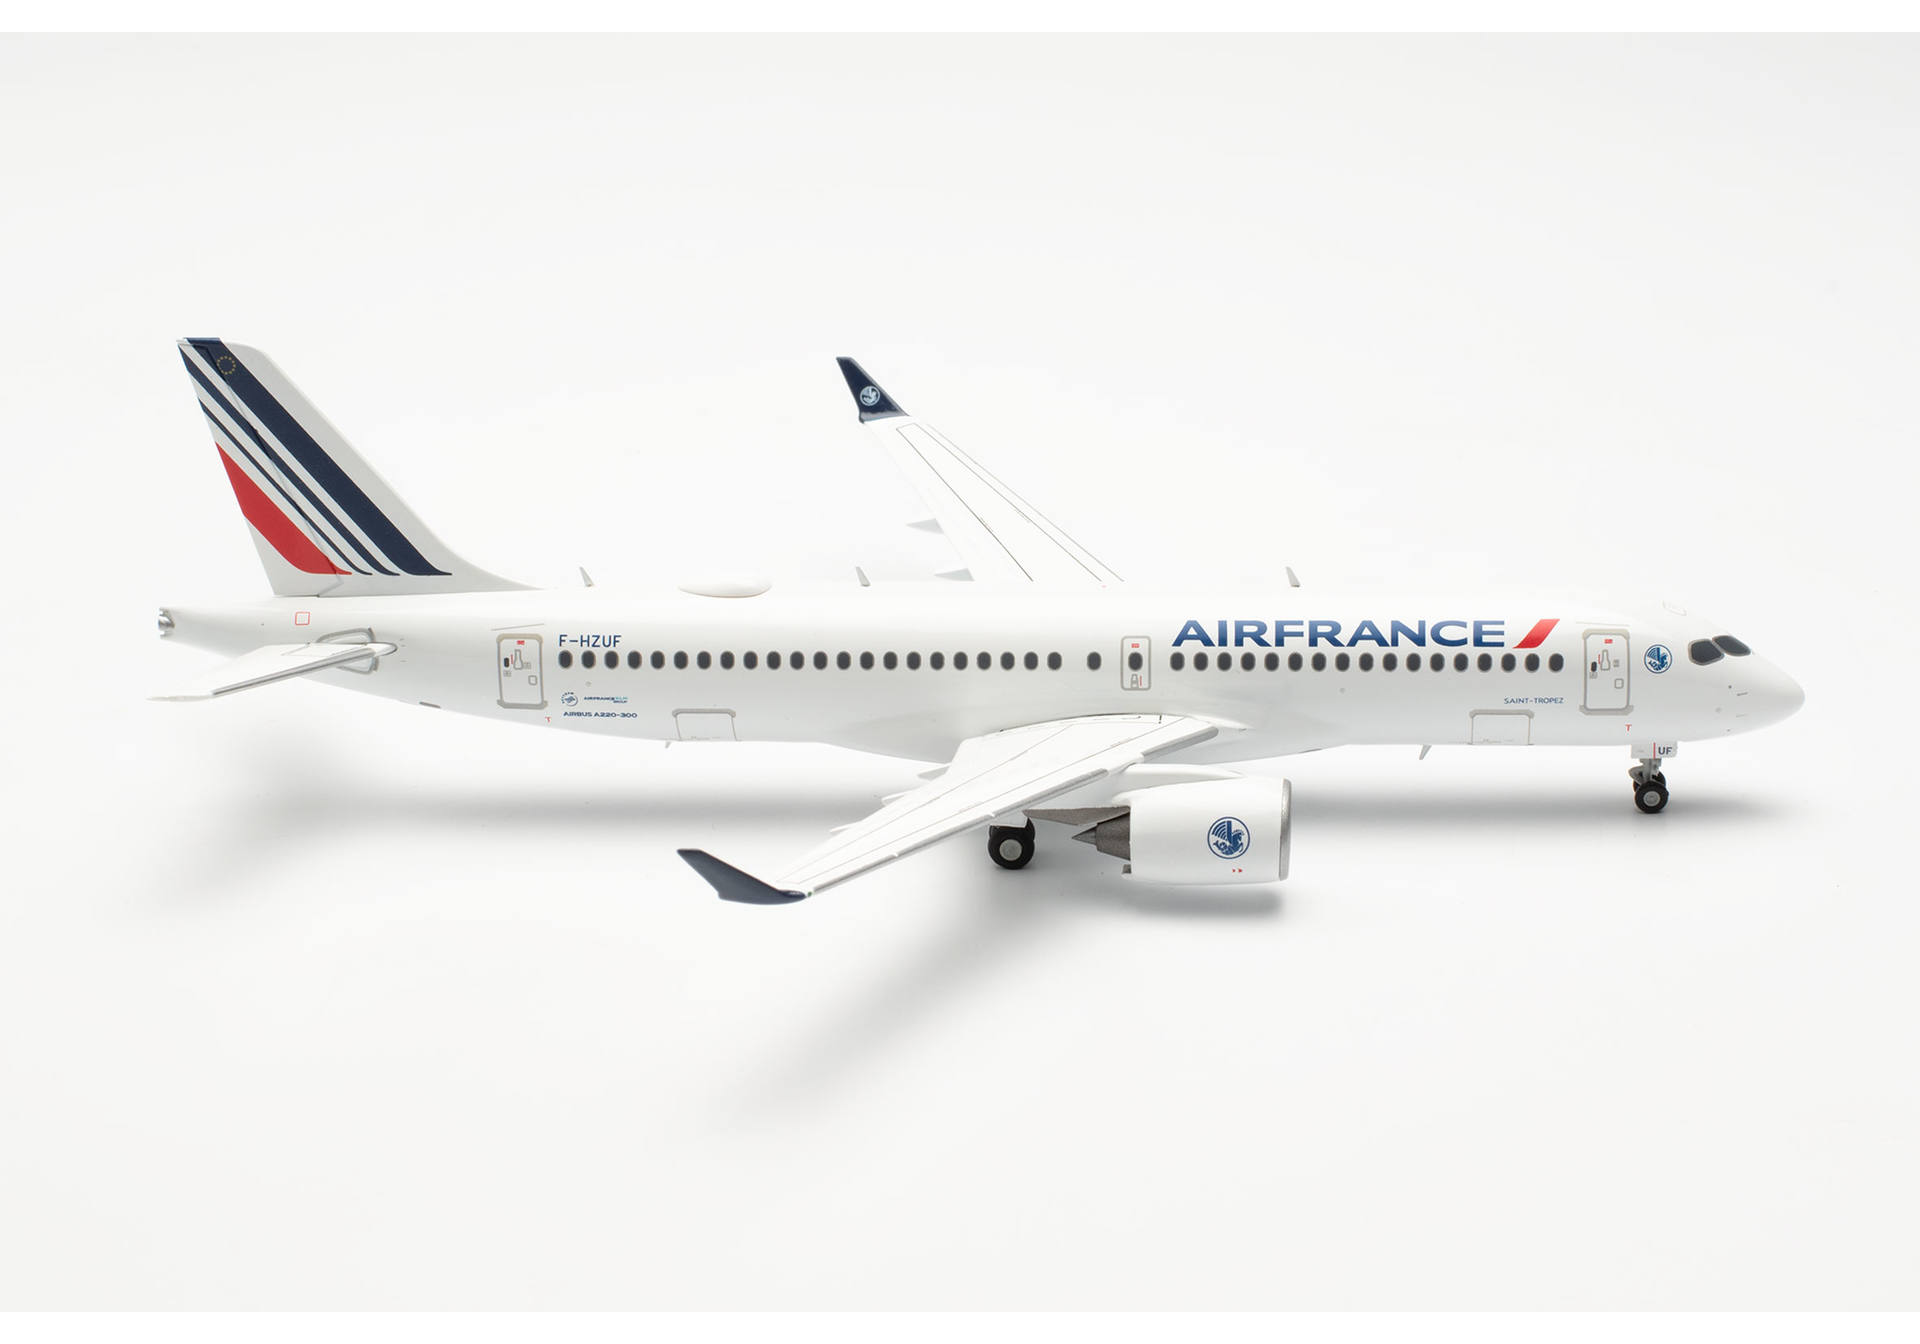 Air France Airbus A220-300 – F-HZUF “Saint-Tropez”